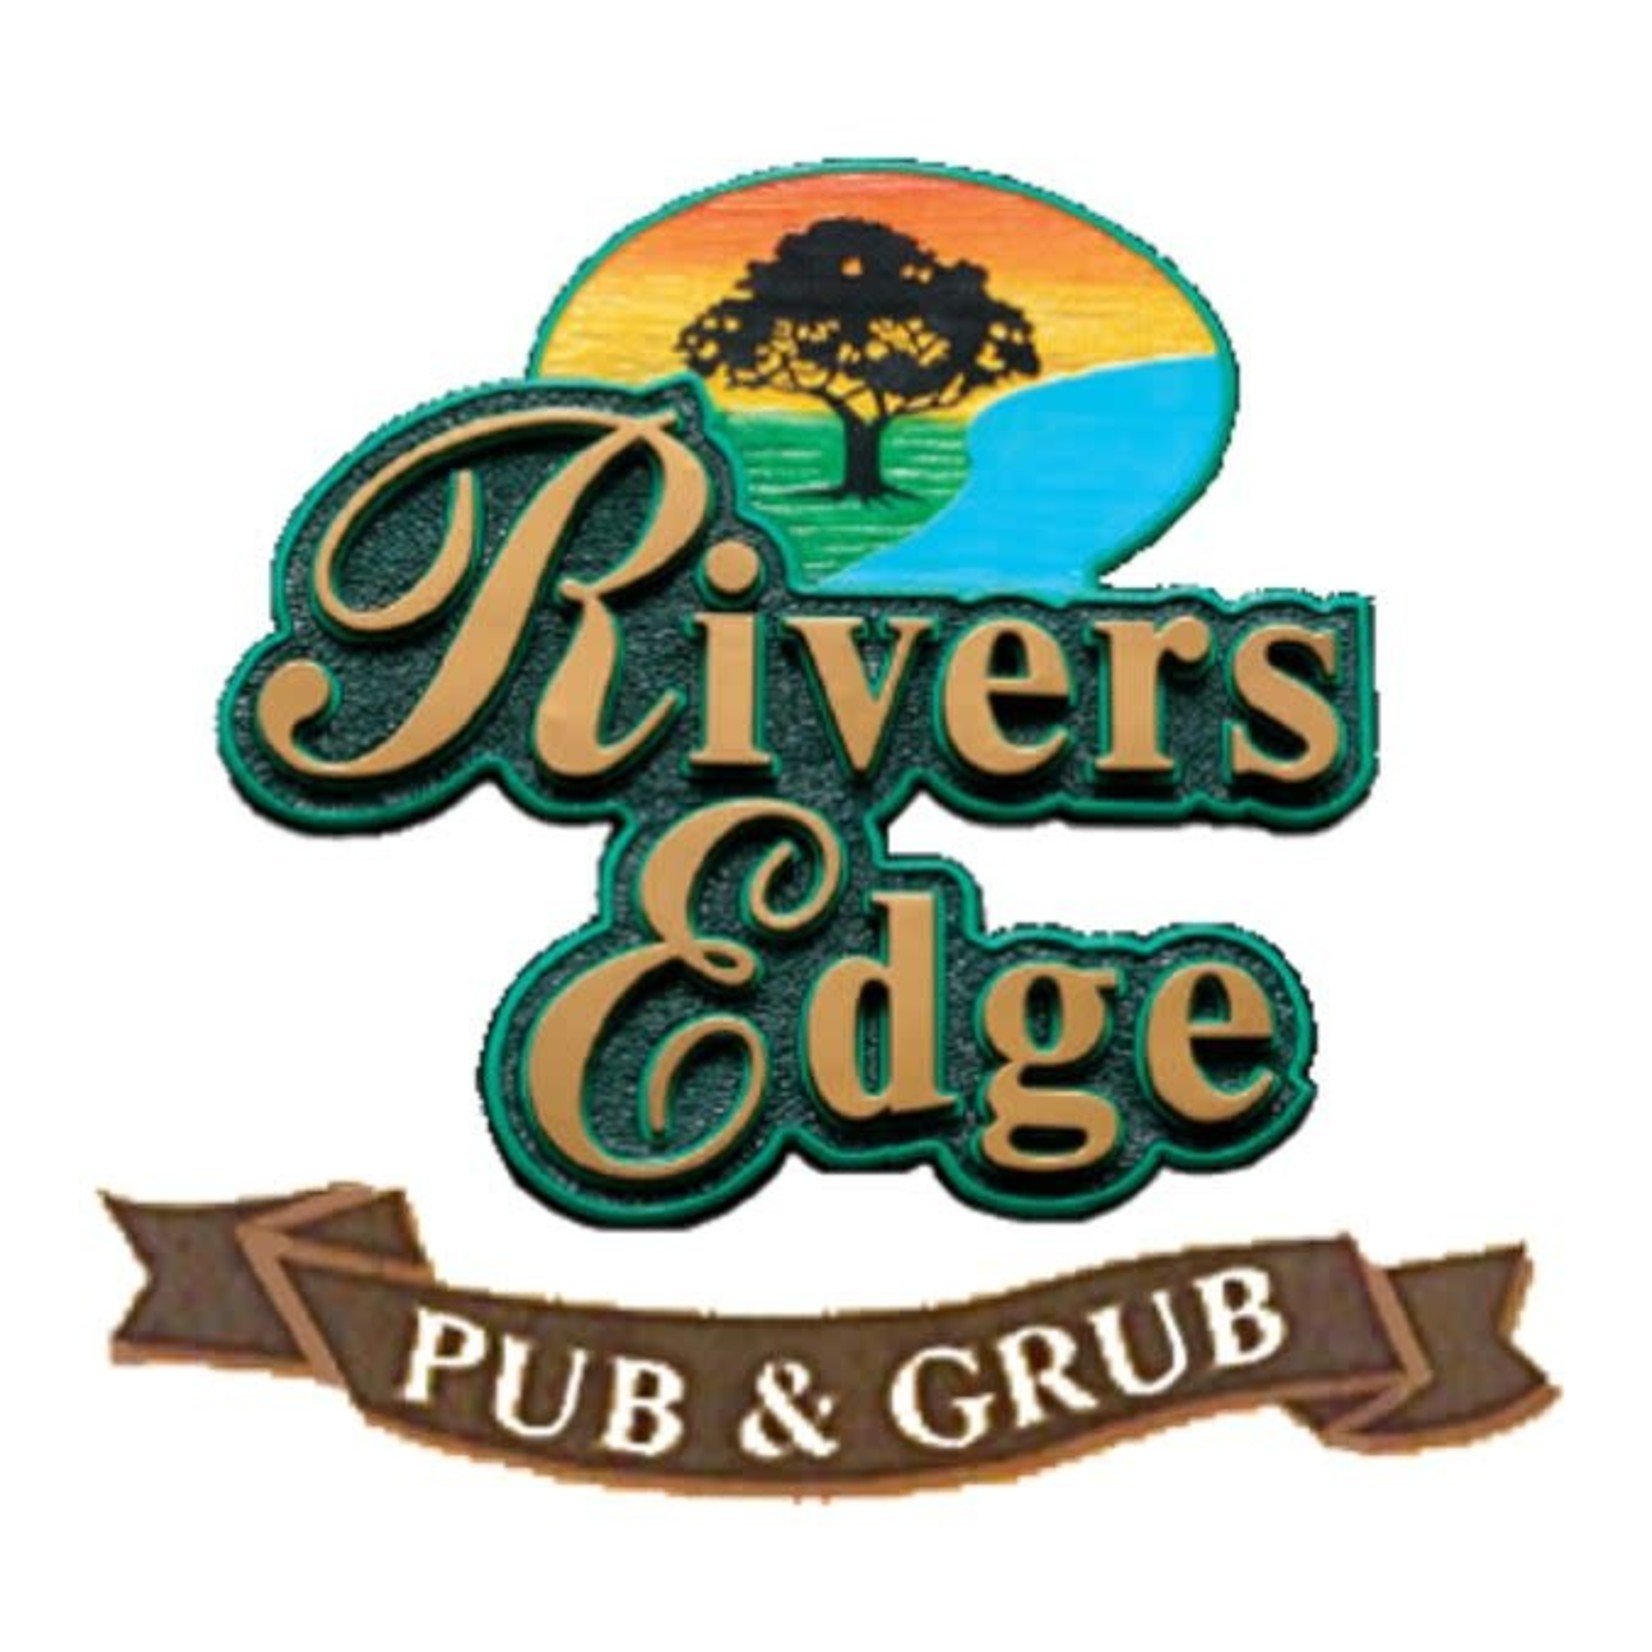 River's Edge Pub & Grub-Wisconsin Dells Rivers Edge Pub & Grub-Wisconsin Dells $15.00 Dining Certificate